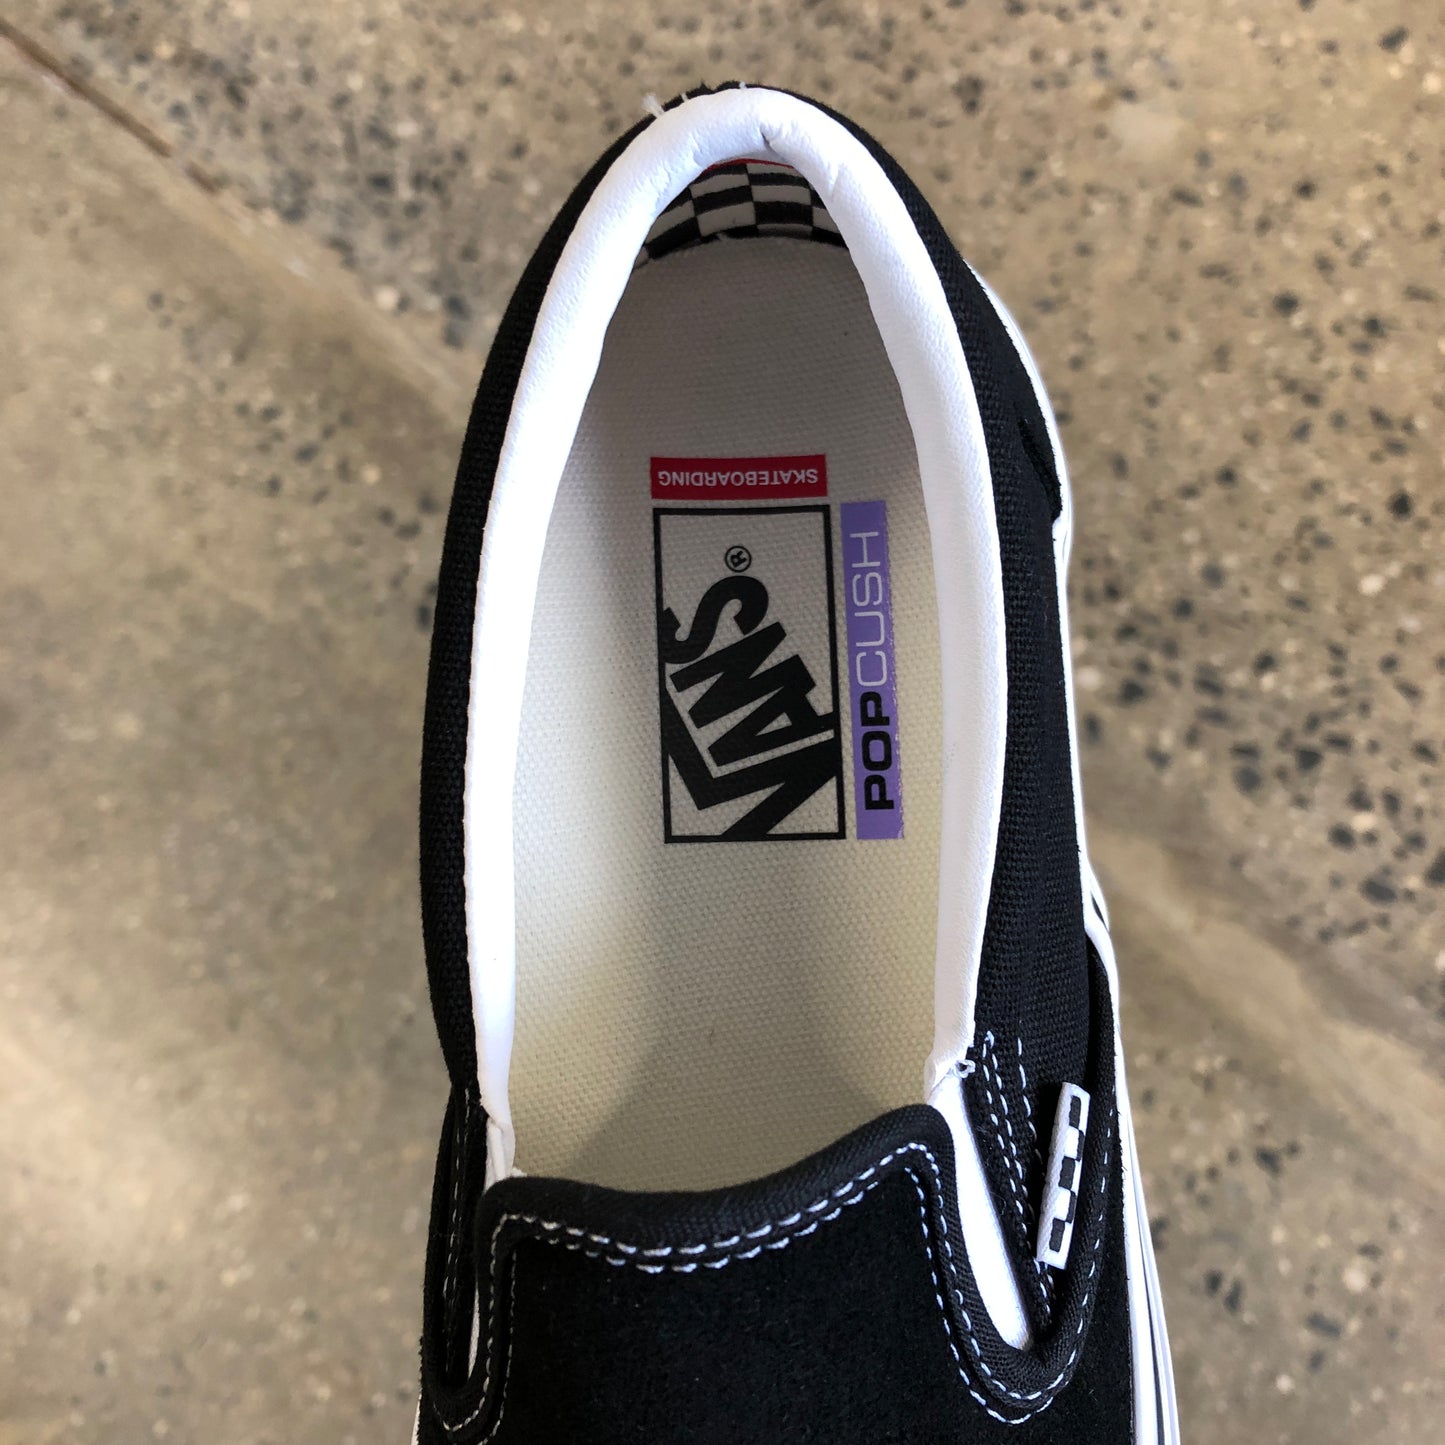 Vans Skate Slip On - Black/White